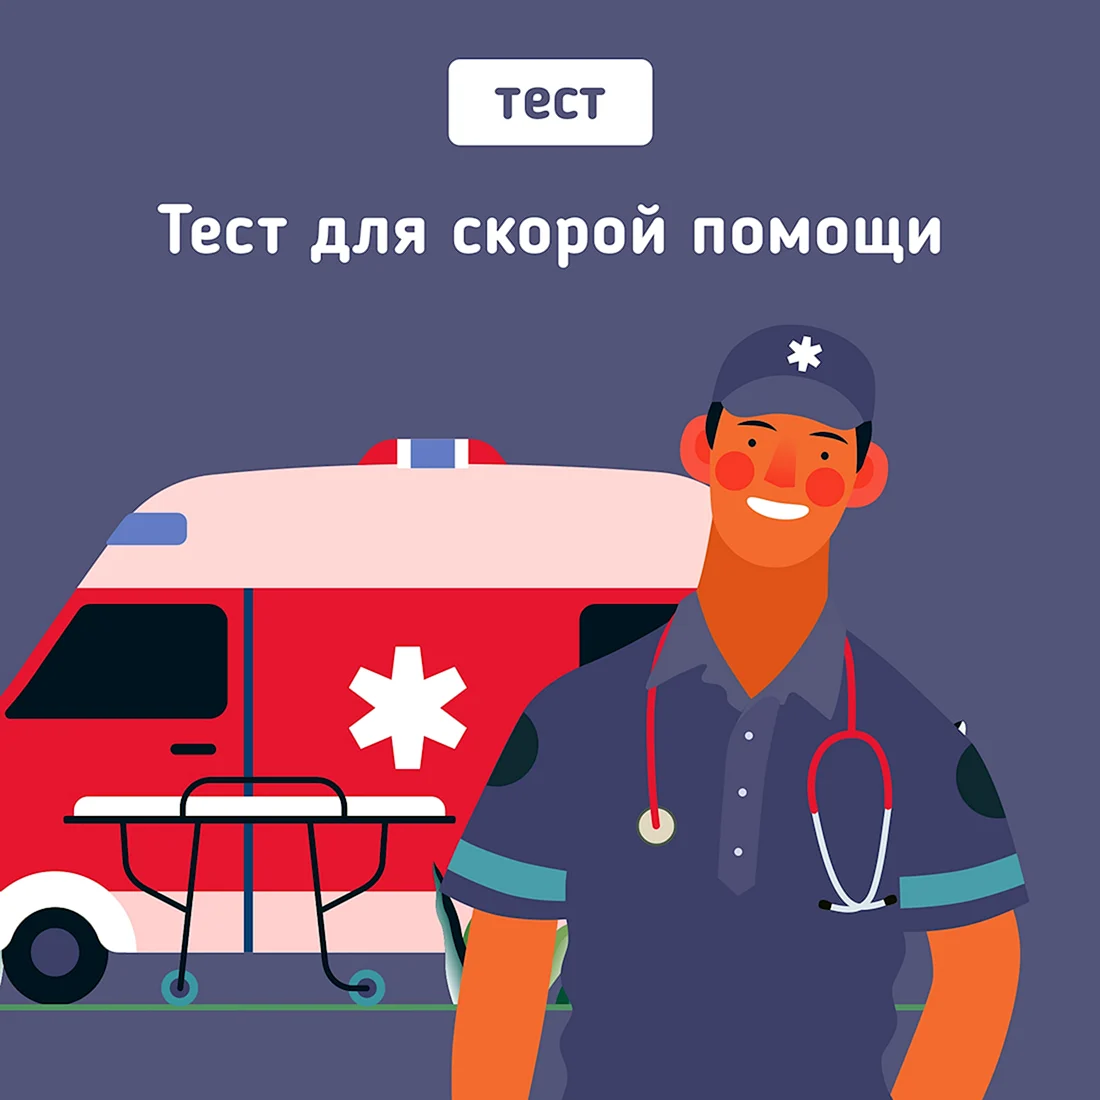 Аватары скорой помощи